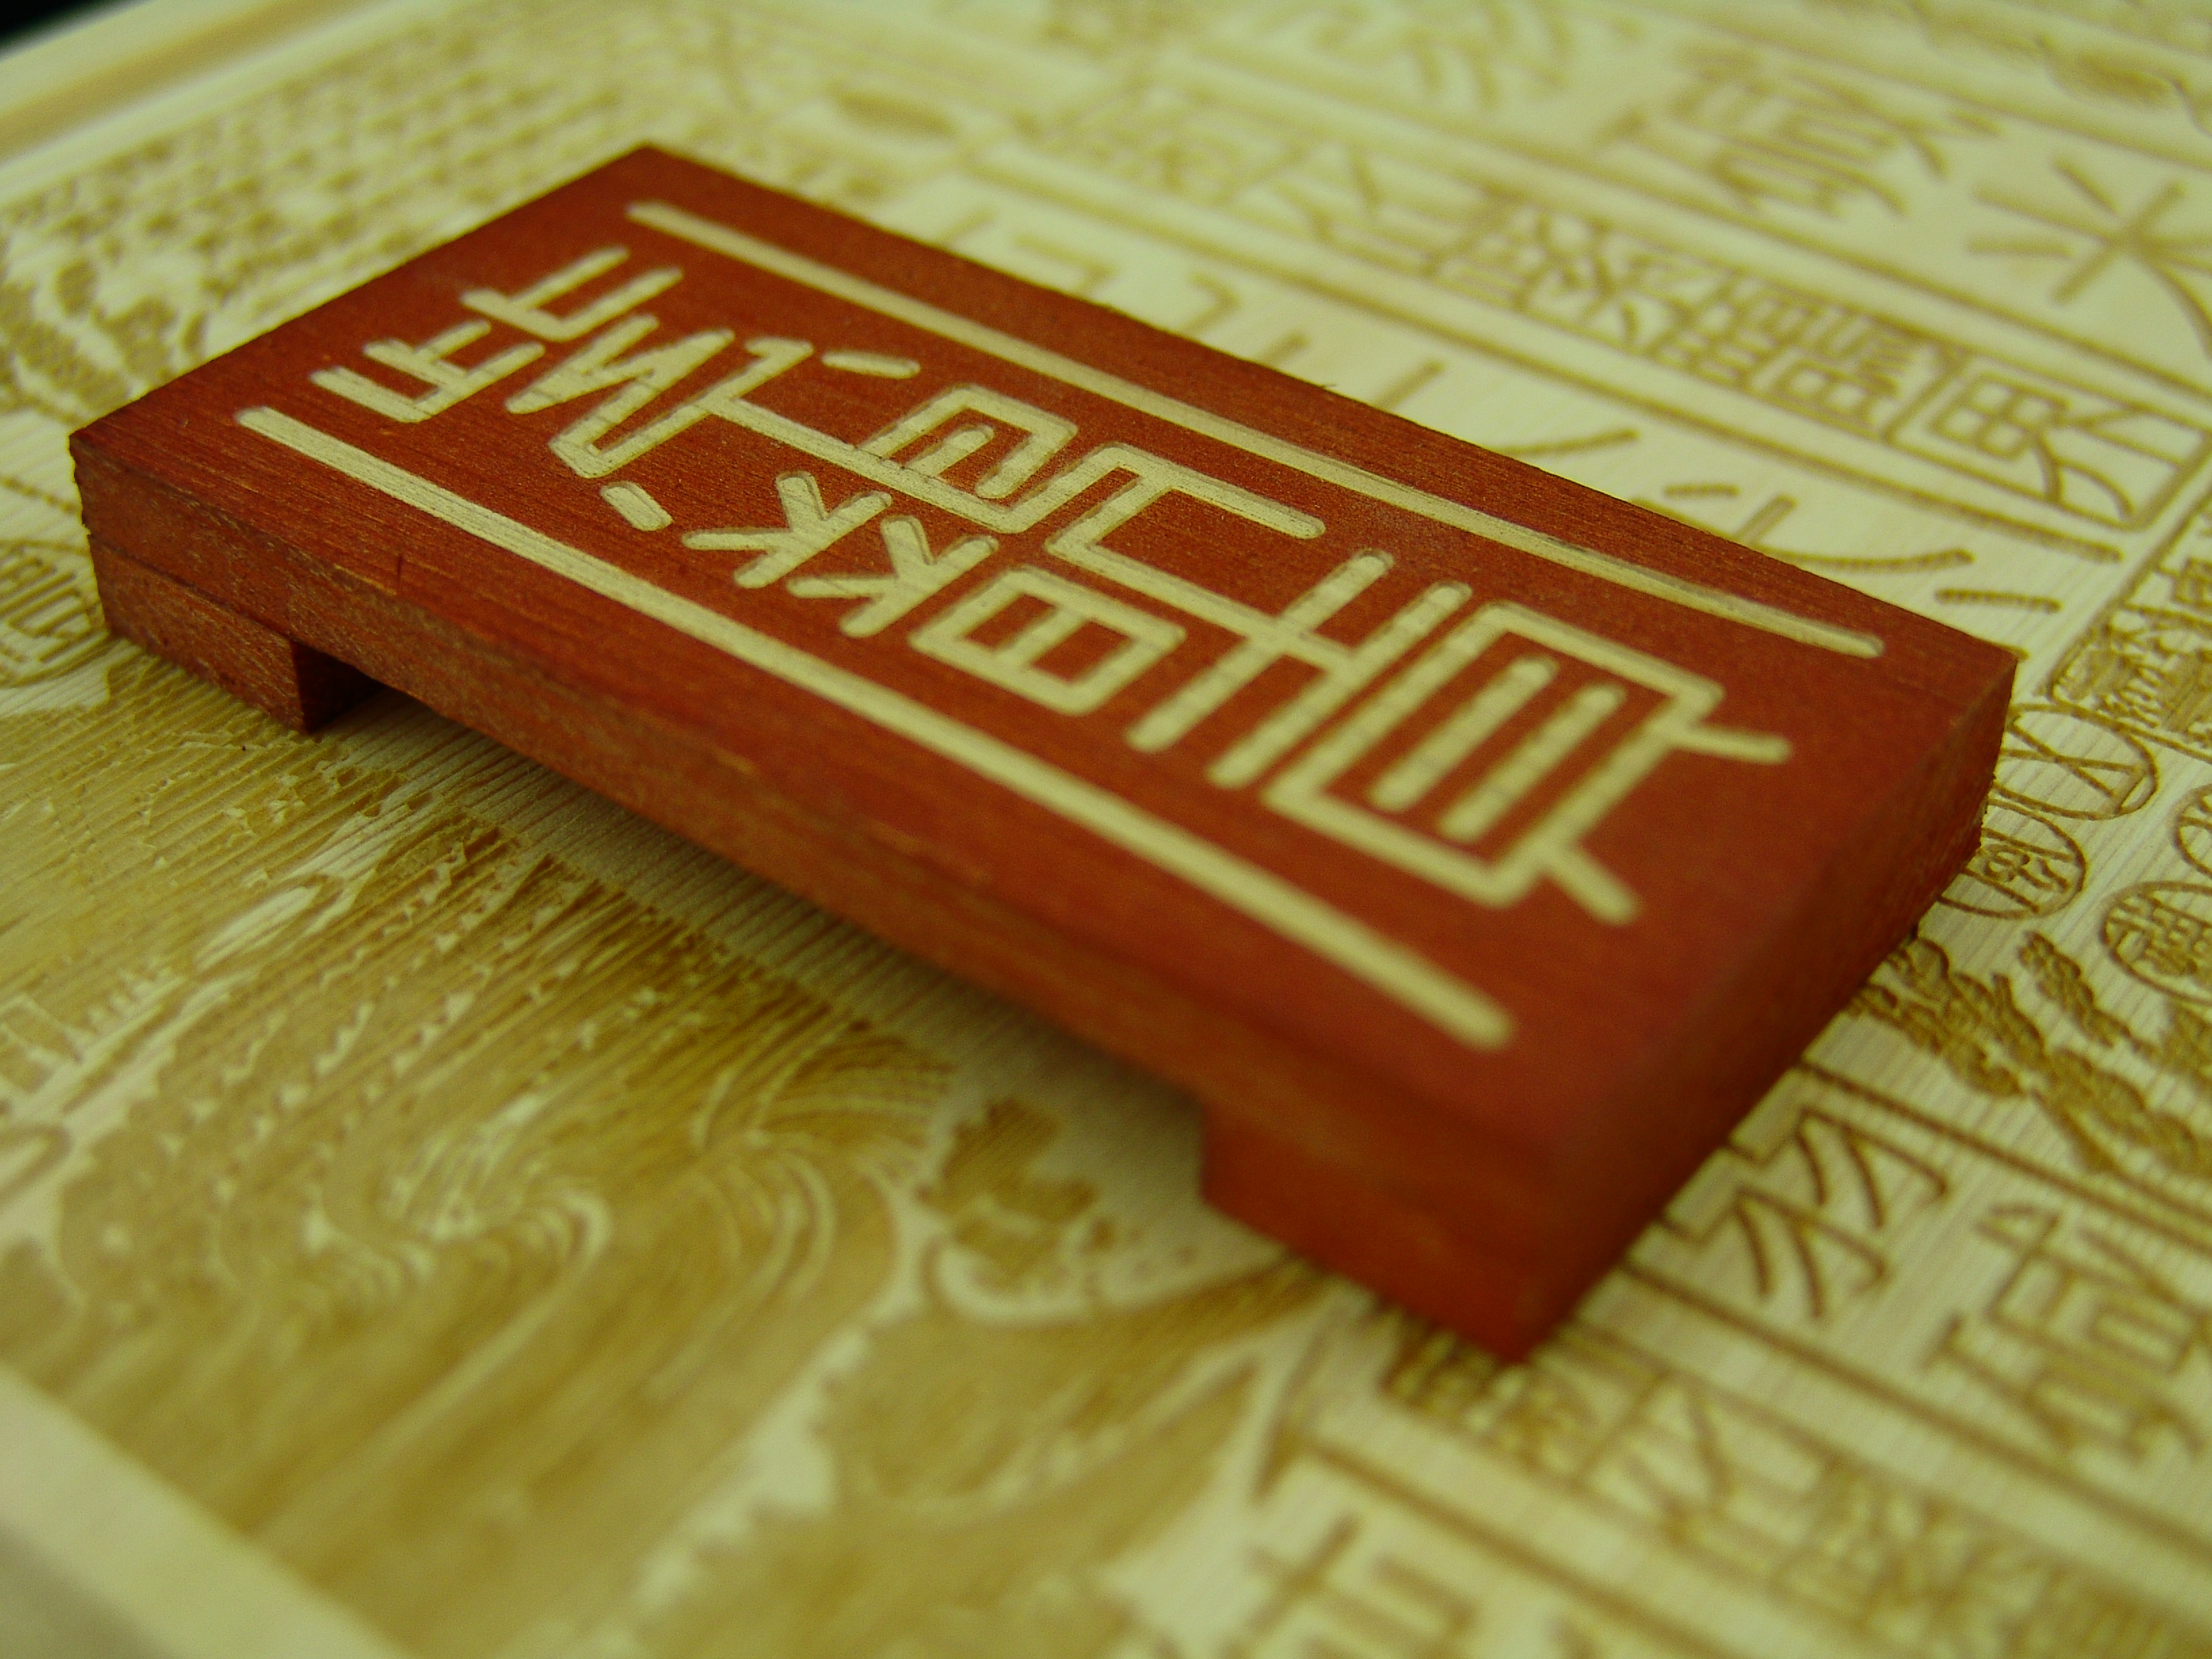 深圳市深圳红酒木盒设计公司厂家产品外包装的深圳红酒木盒设计公司